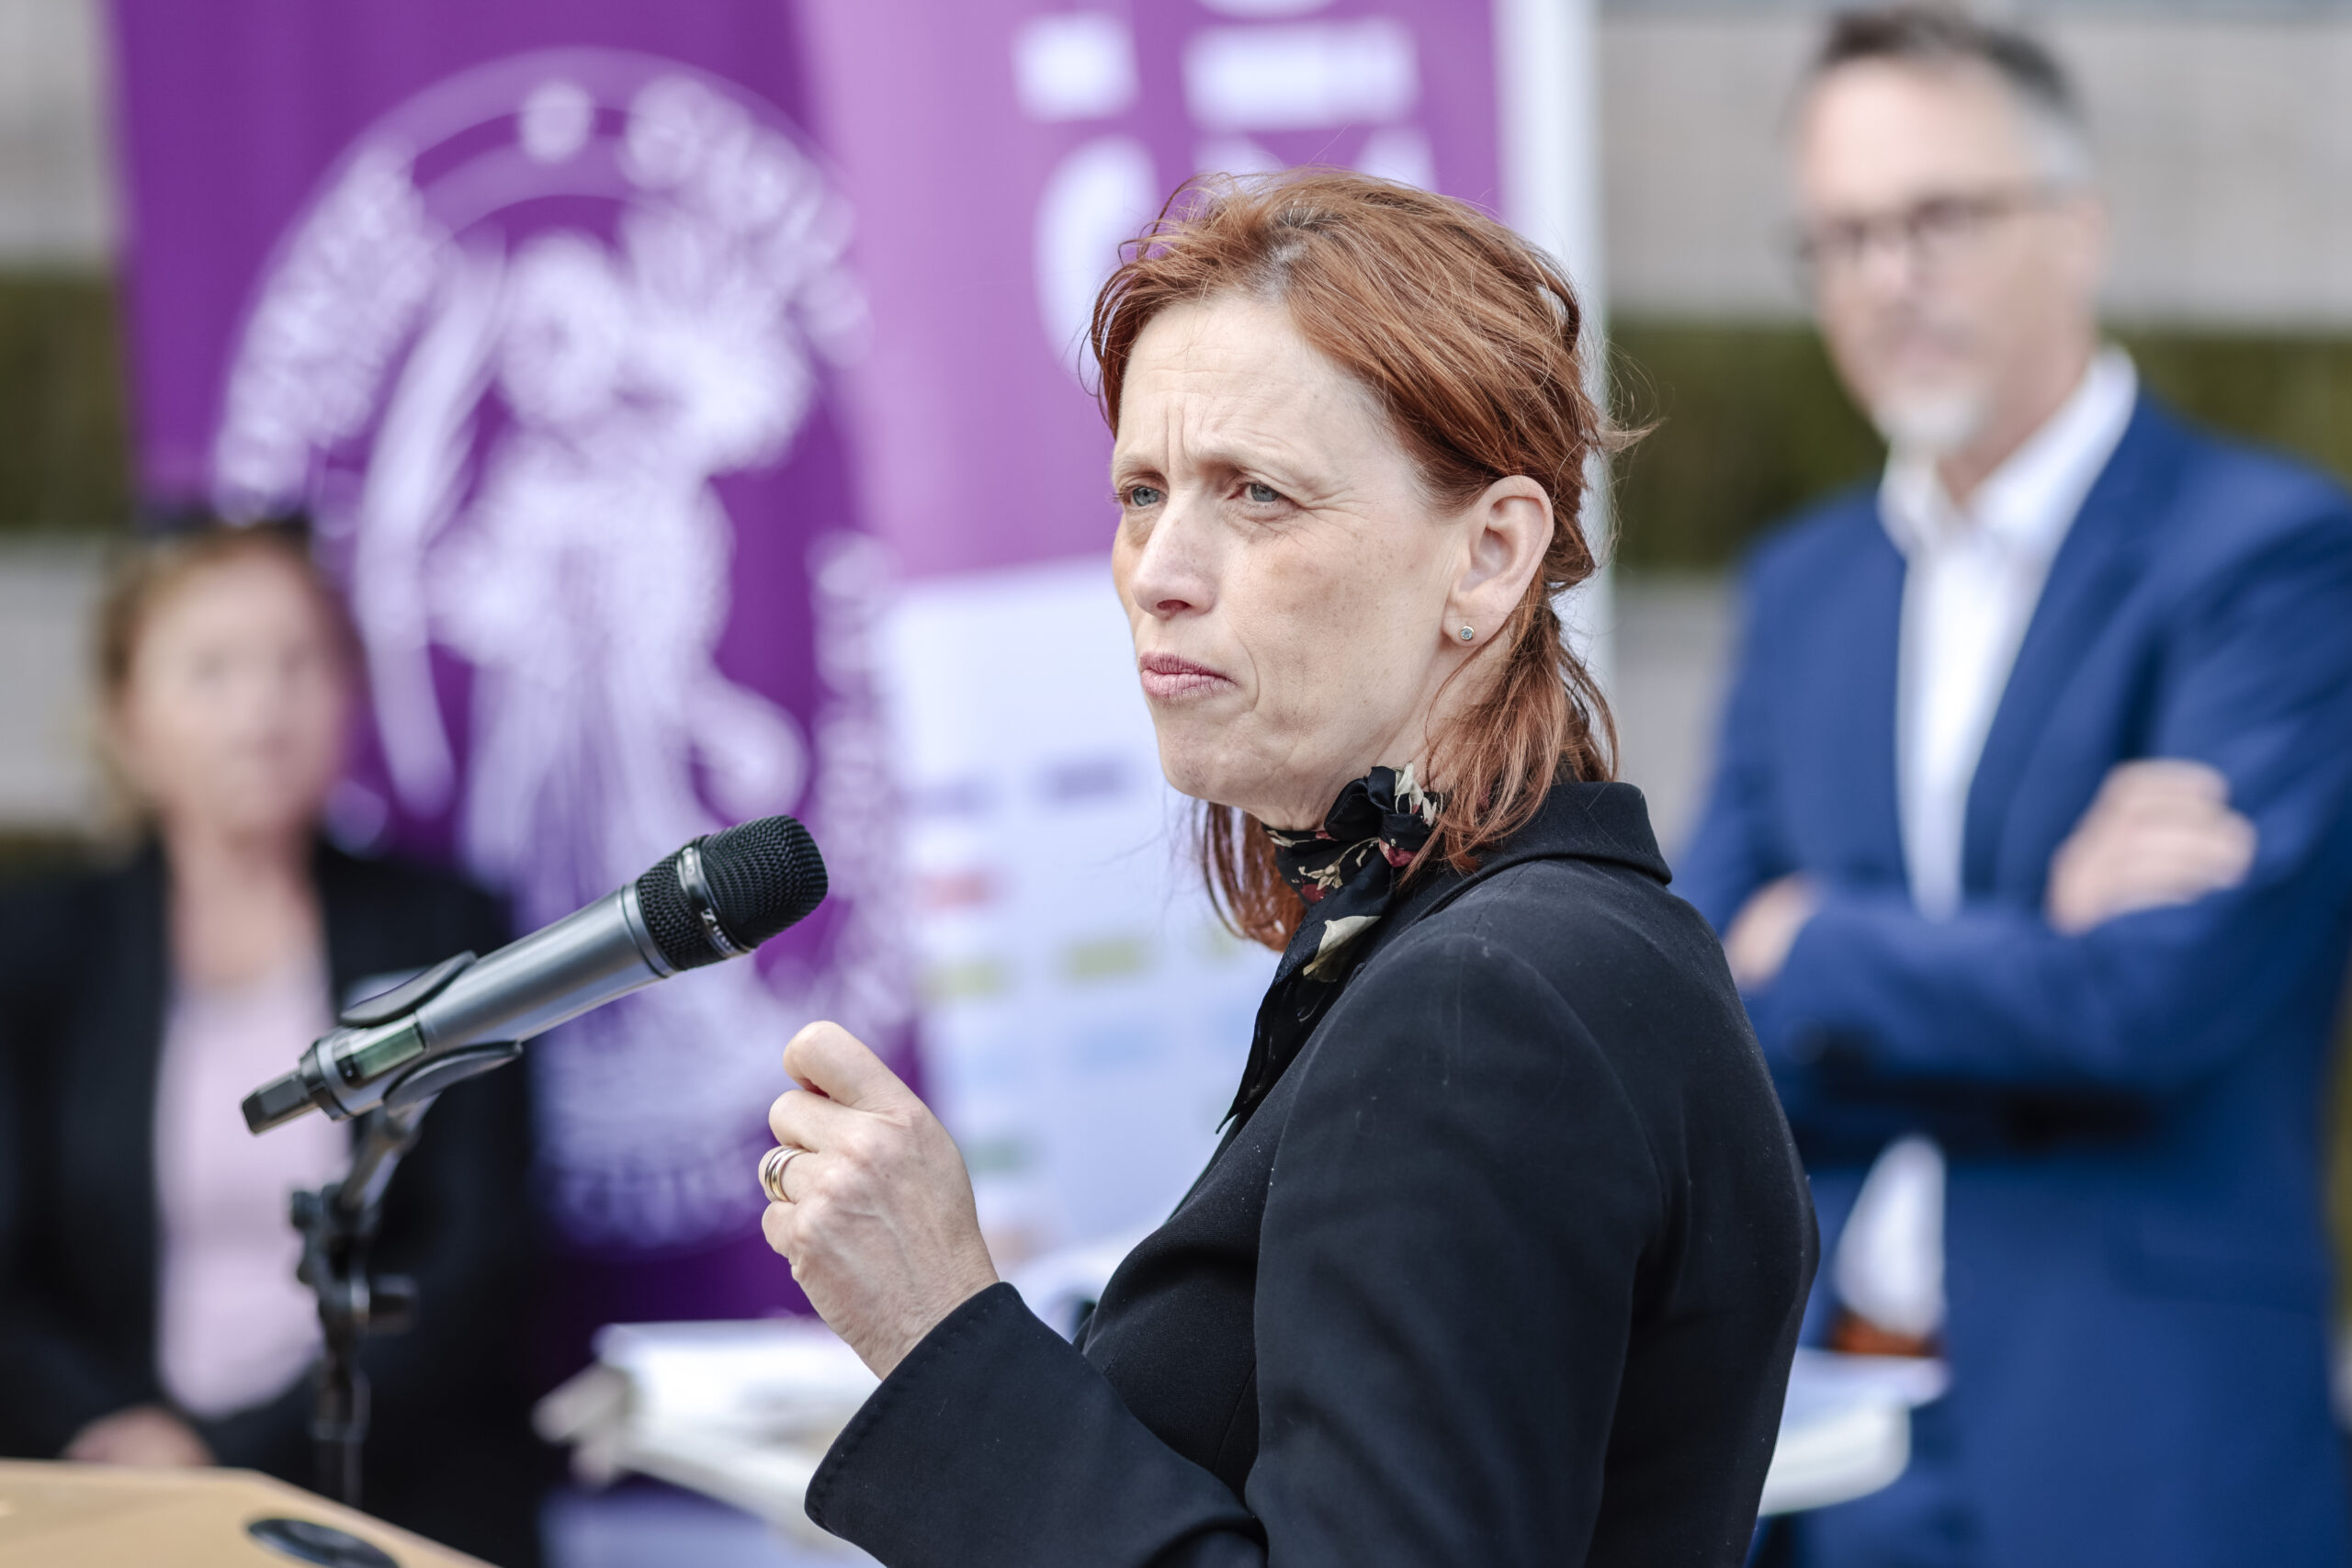 Karin Prien (CDU), Ministerin für Bildung, Wissenschaft und Kultur, spricht während einer Grundsteinlegung auf dem Gelände der Christian-Albrechts-Universität zu Kiel. (Archivbild)